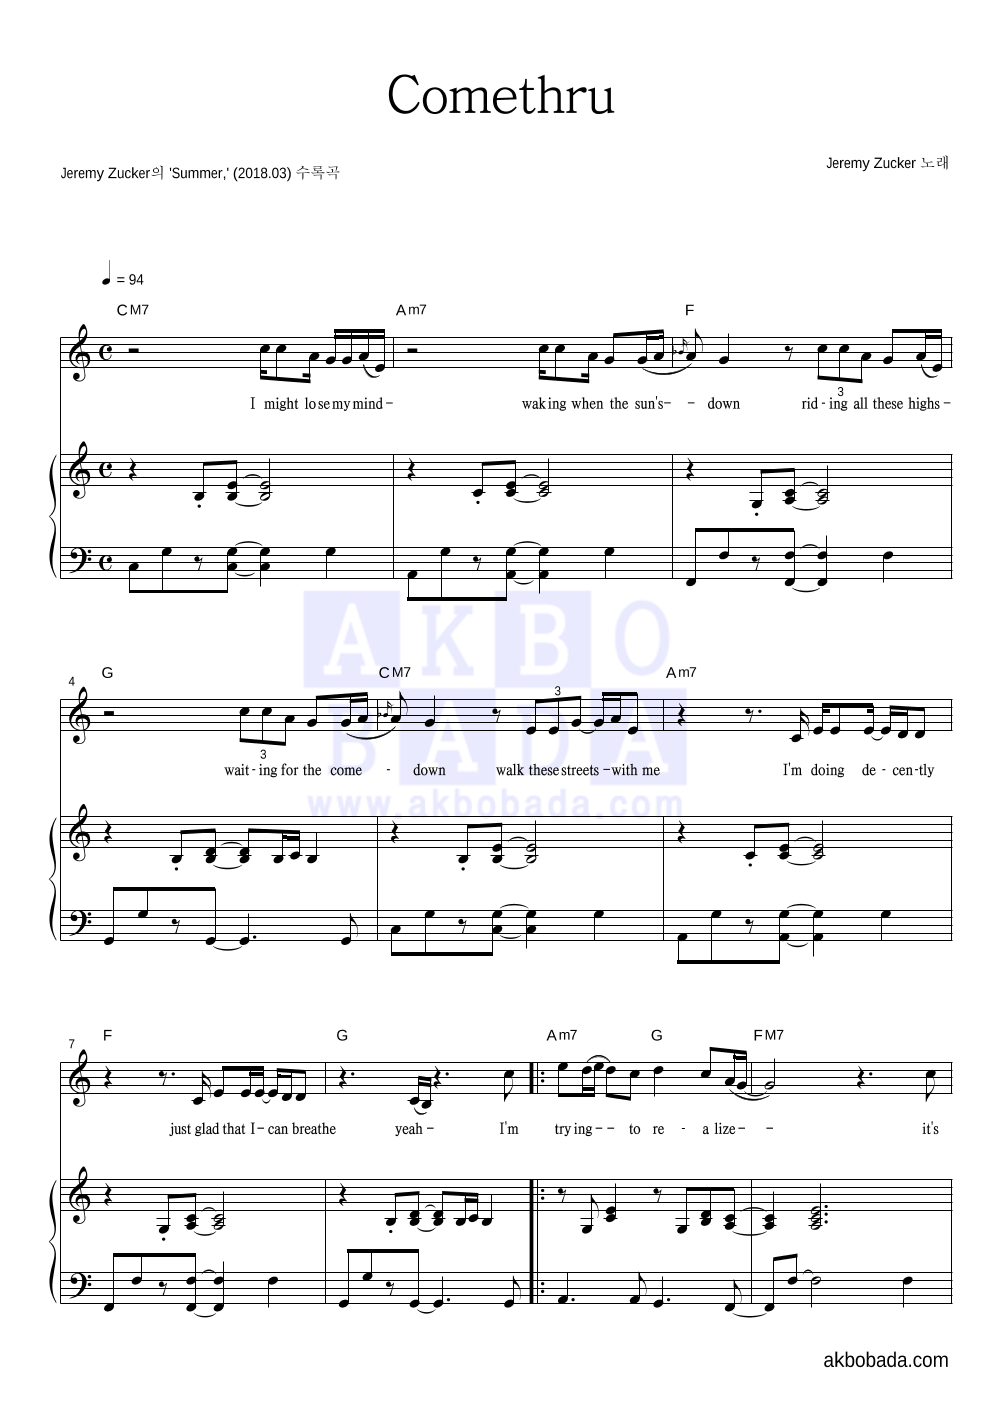 Jeremy Zucker - Comethru 피아노 3단 악보 